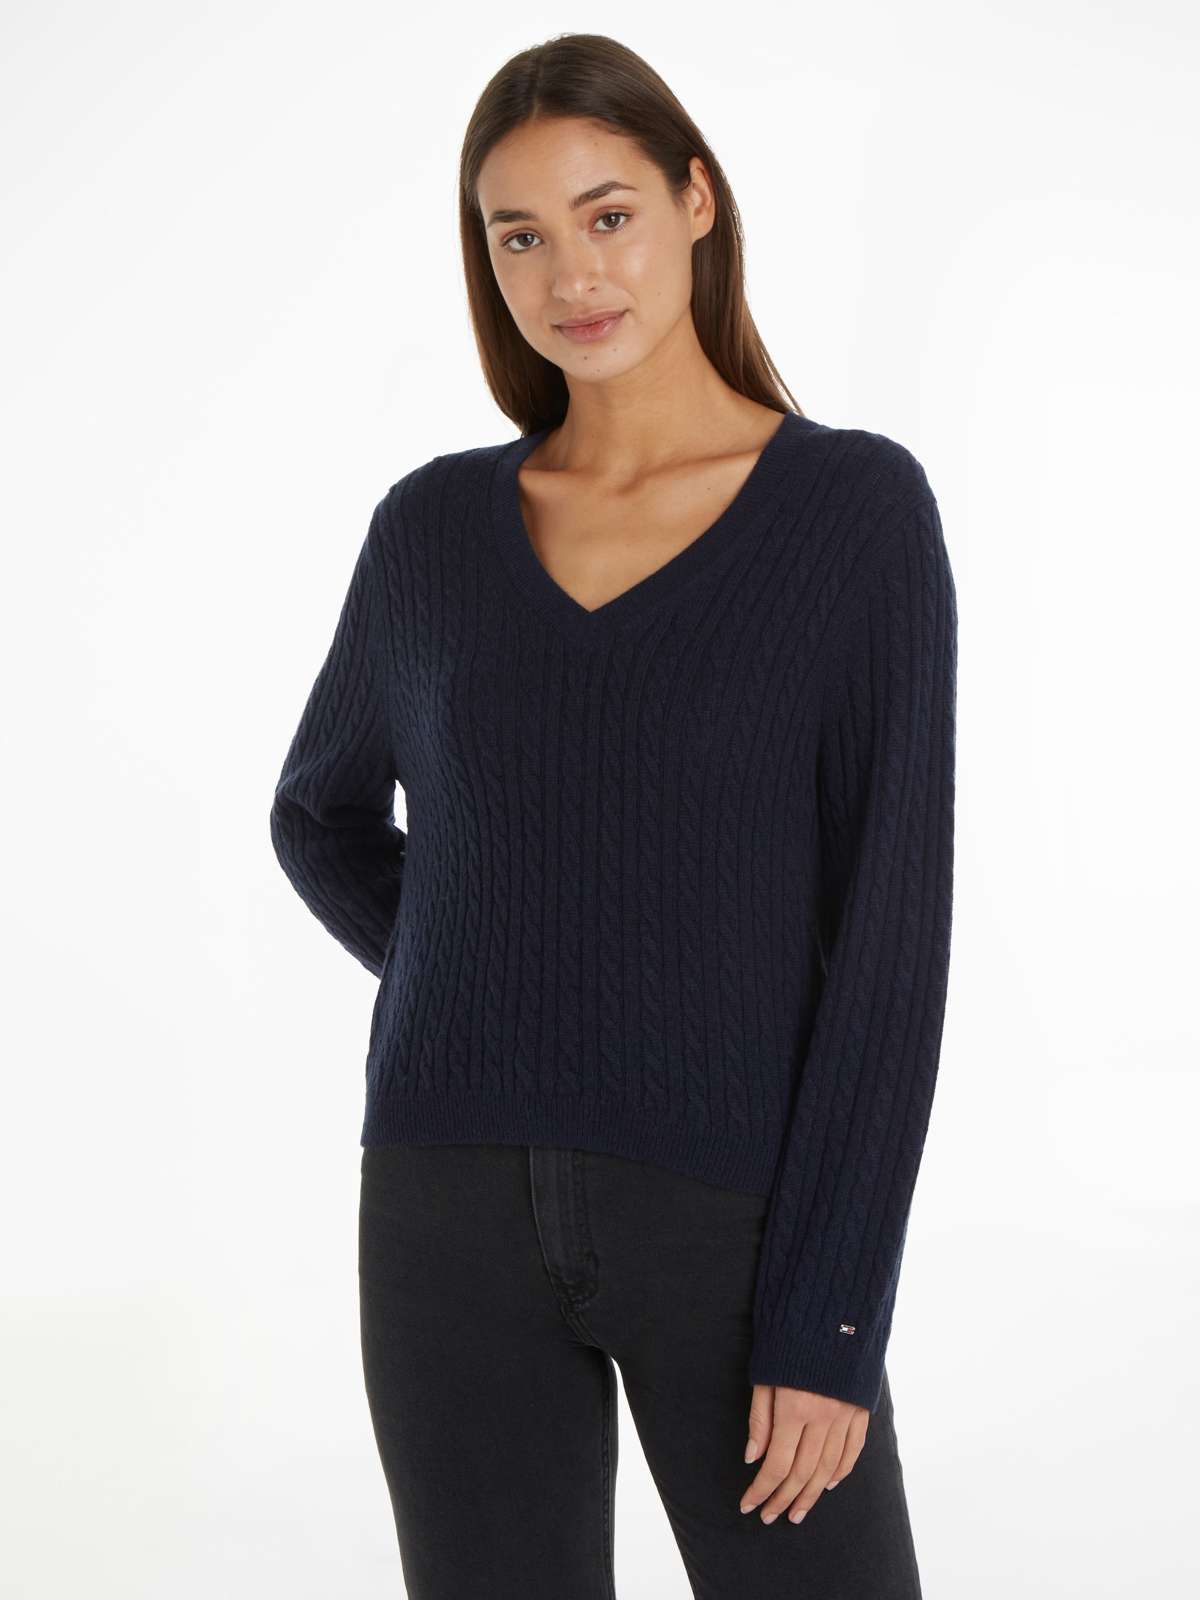 Вязаный свитер из мягкой шерсти, прочный, дышащий и вневременной, премиум-класса.